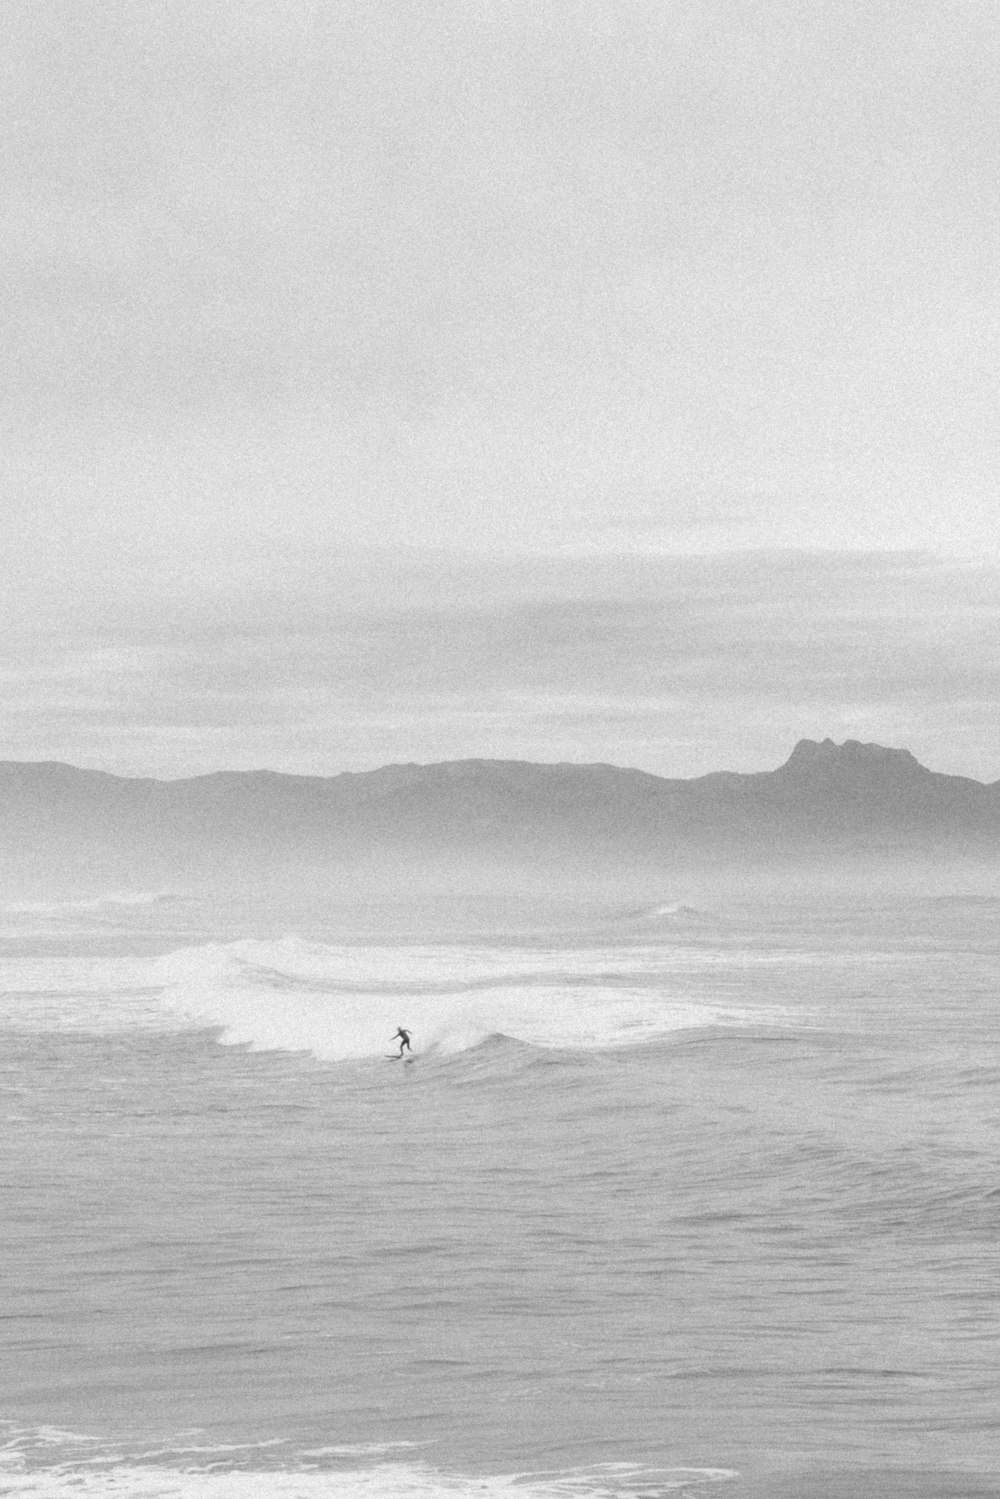 바다의 파도 위에서 서핑 보드를 타는 사람